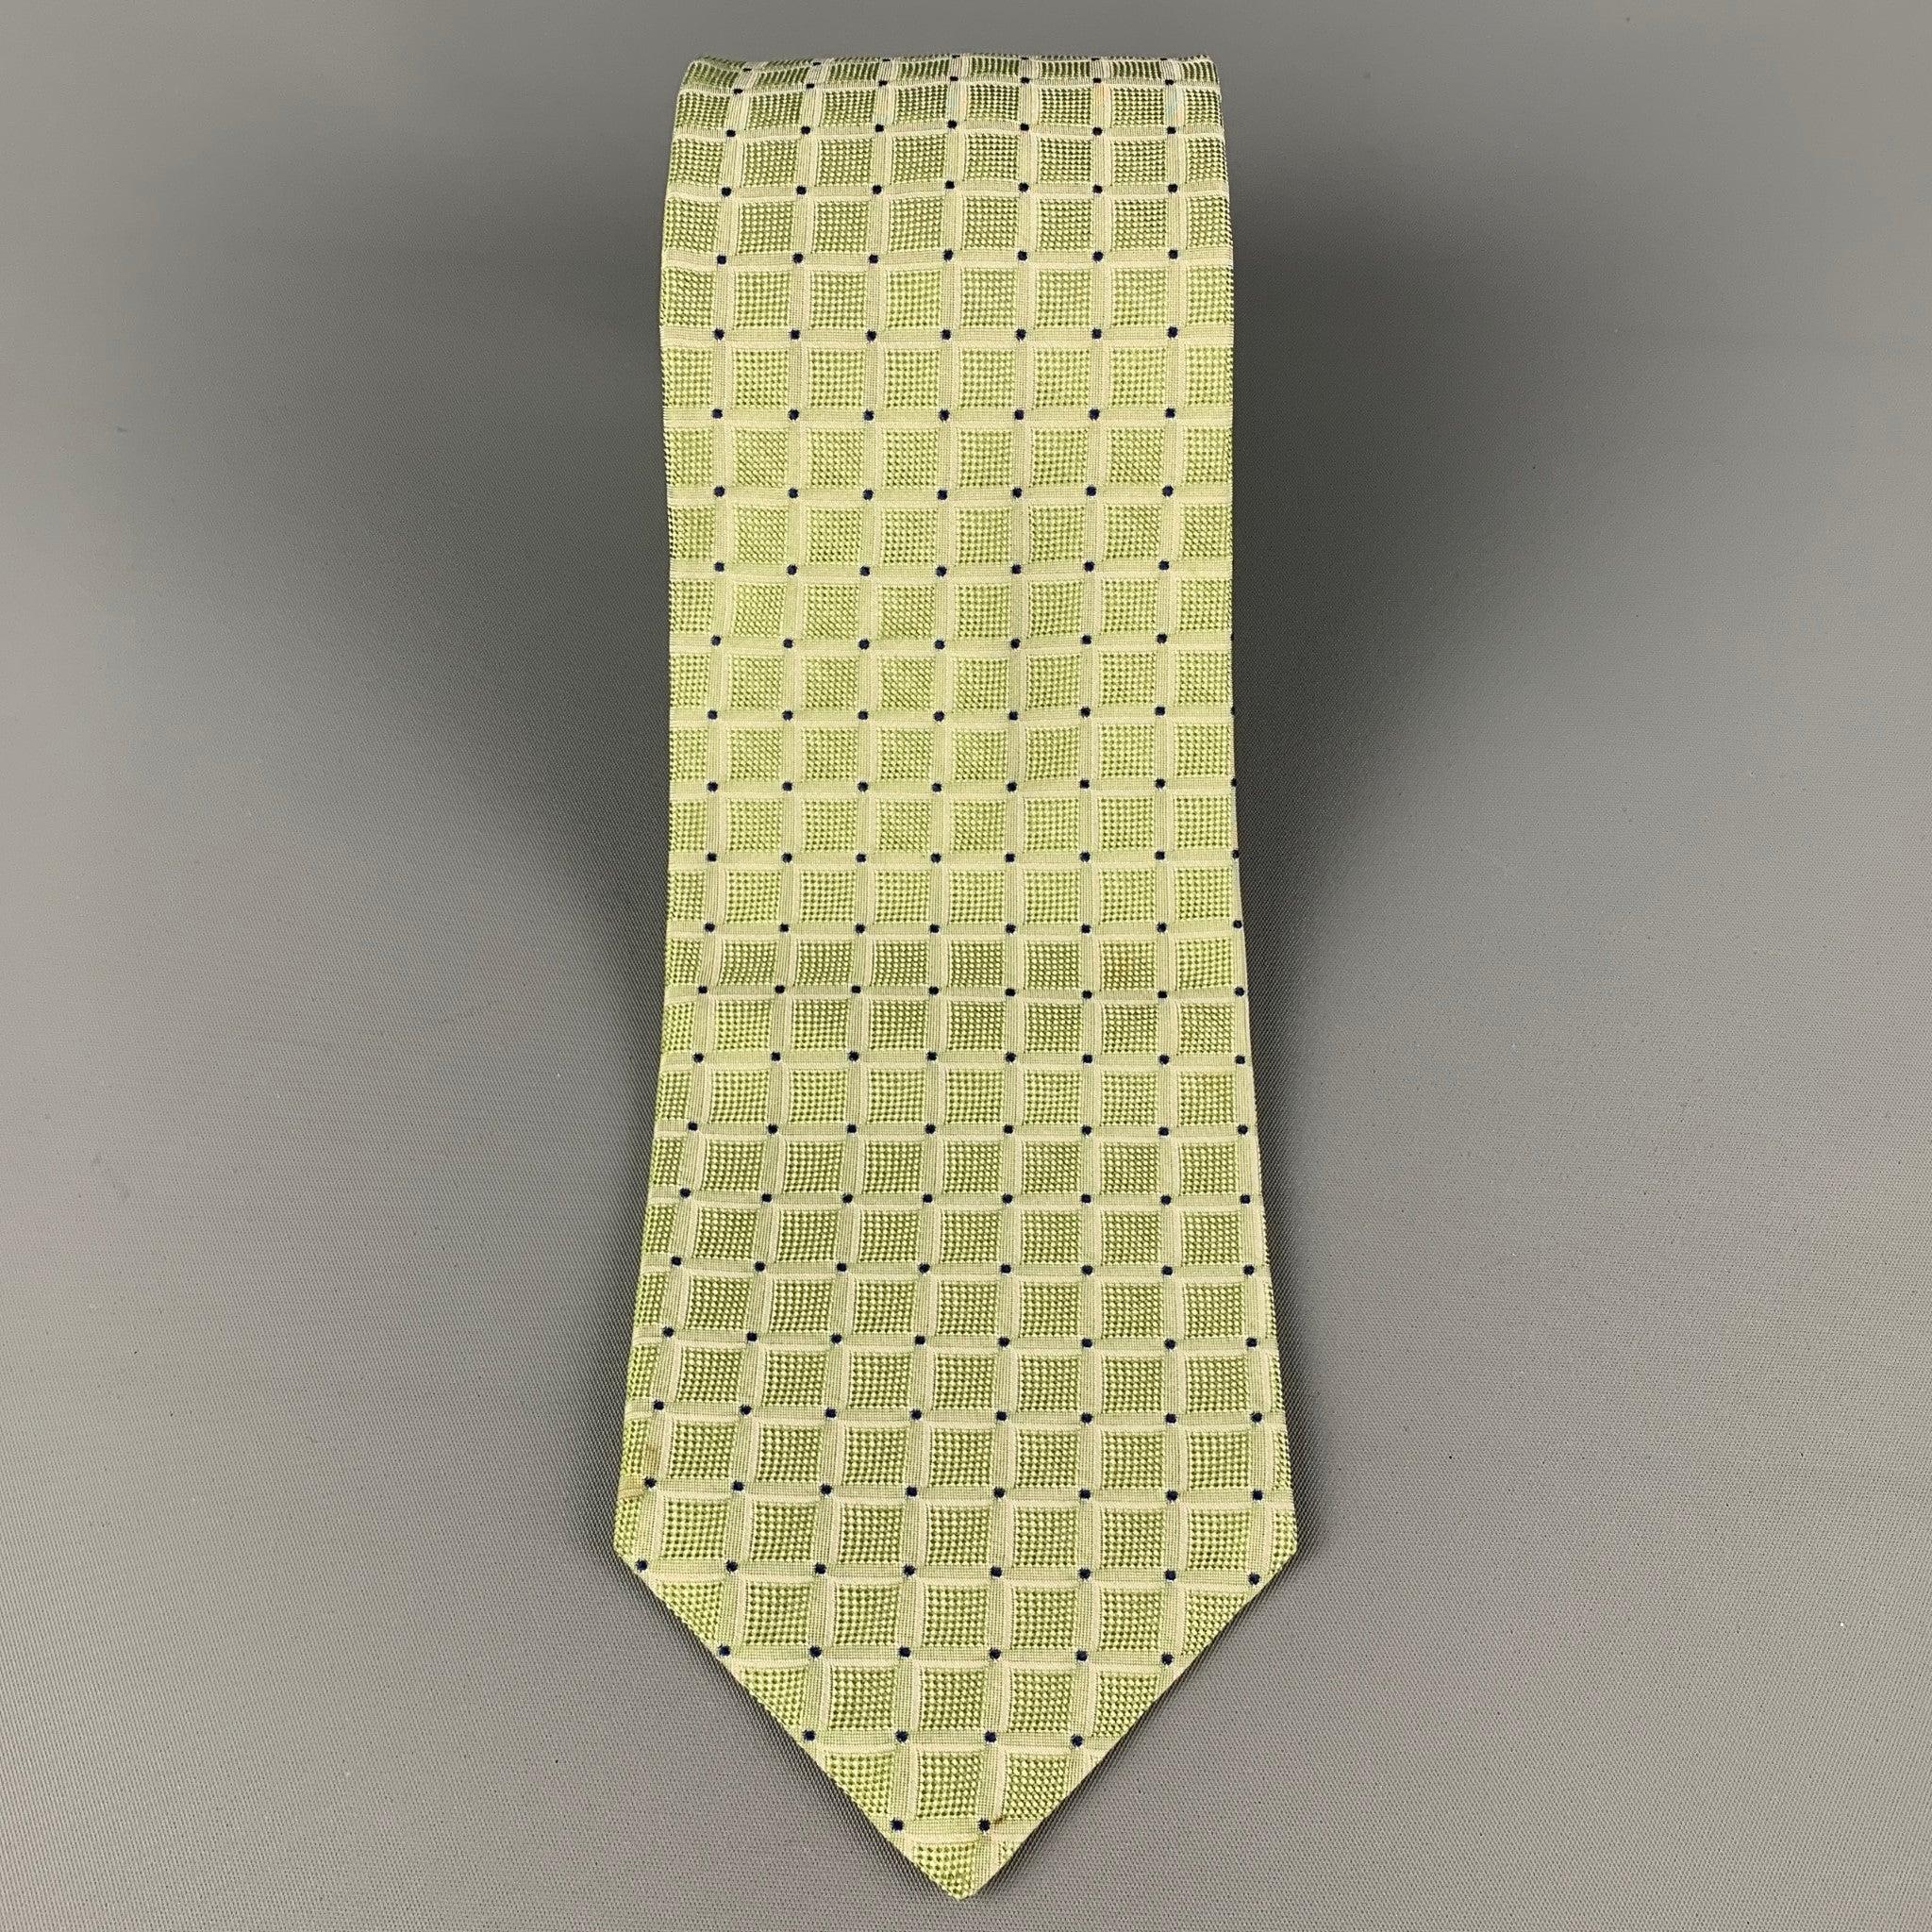 KITON Krawatte aus salbeifarbener Seide mit quadratischem All-Over-Druck. Hergestellt in Italien. Sehr guter, gebrauchter Zustand, Breite: 3.75 Zoll  Länge: 58 Zoll 

  
  
 
Sui Generis-Referenz: 120389
Kategorie: Krawatte
Mehr Details
    
Marke: 